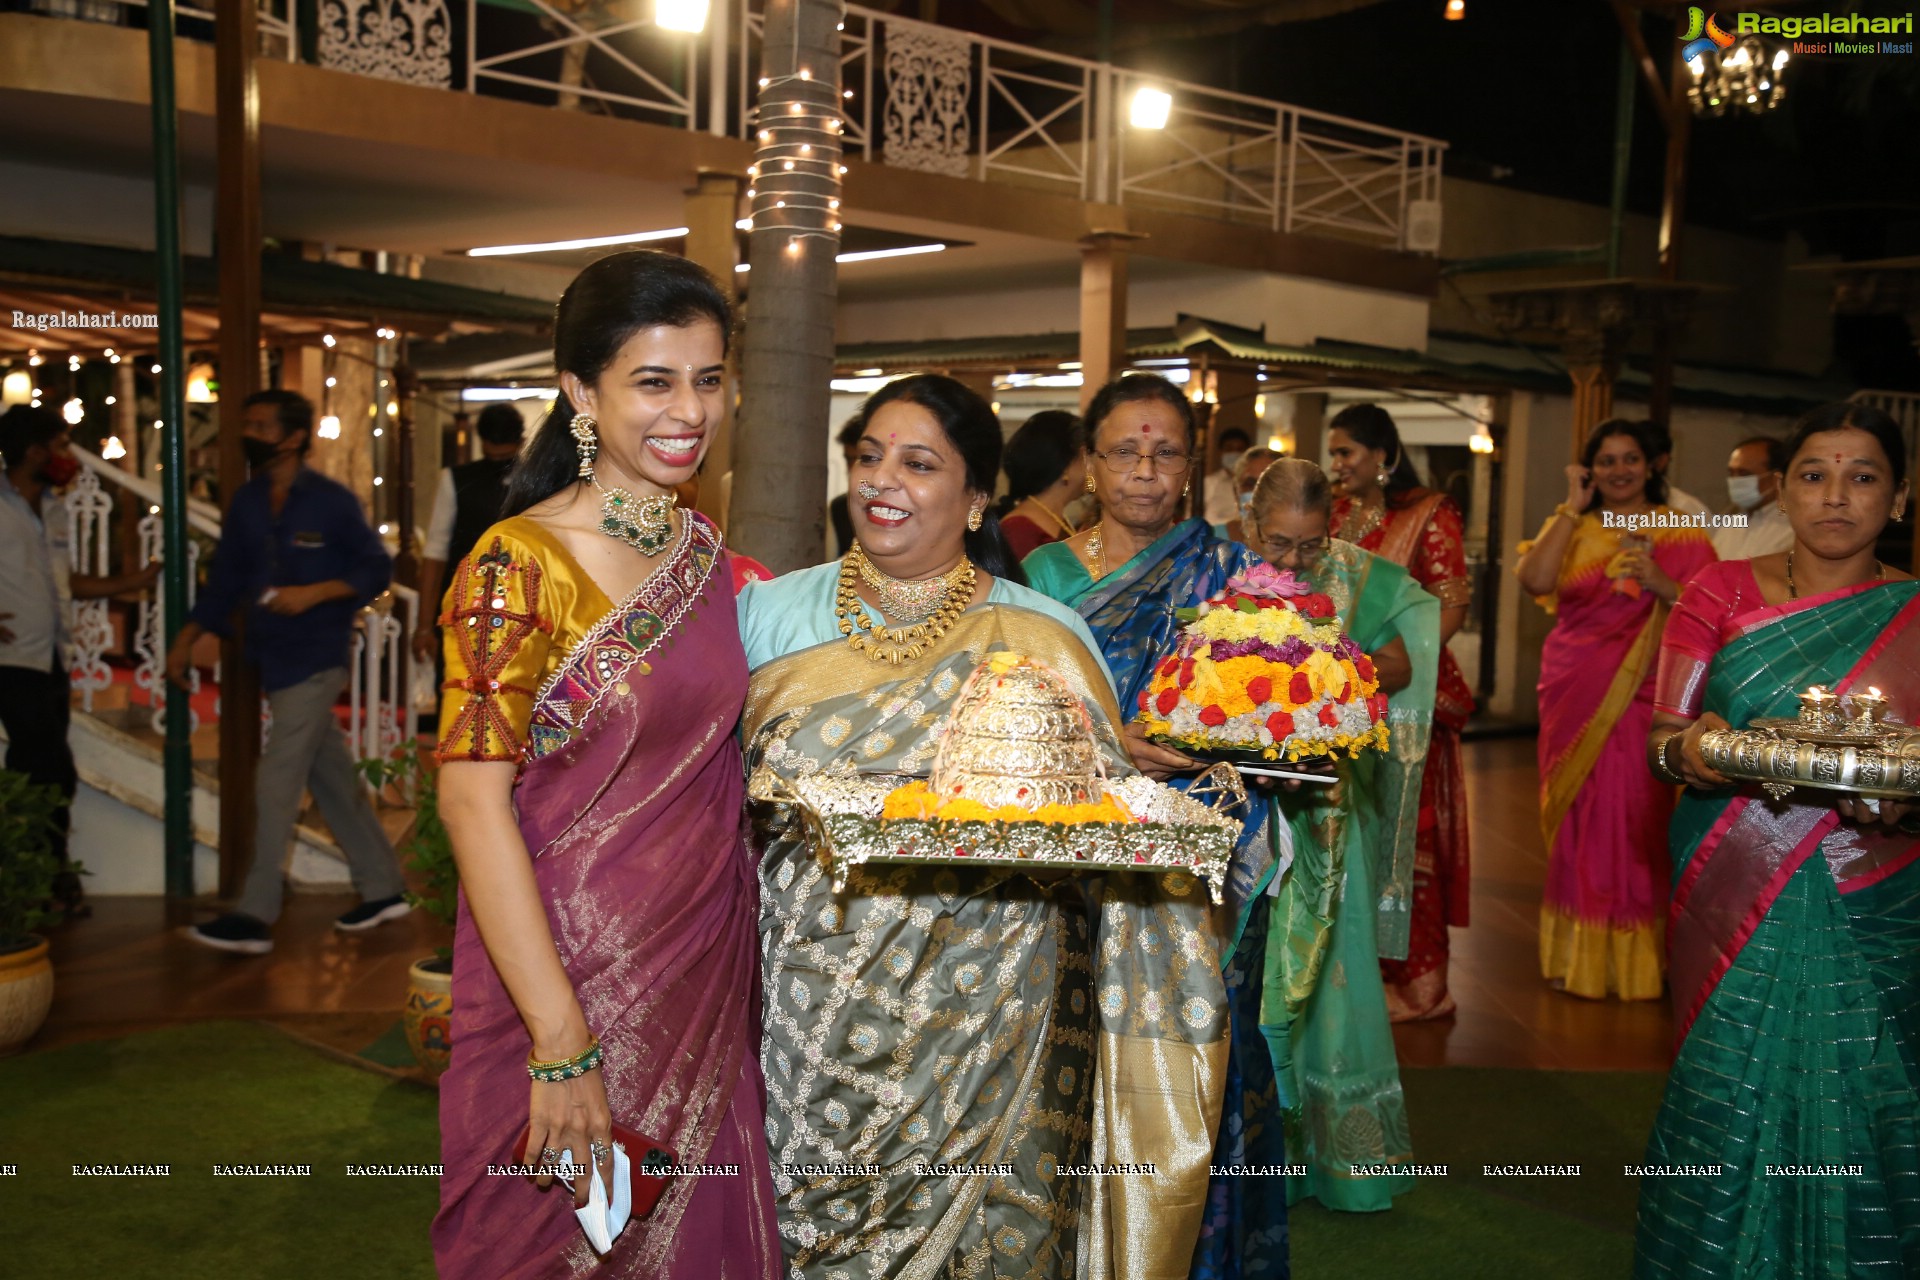 Shriya's Bathukamma Celebrations at Our Place, Hyderabad